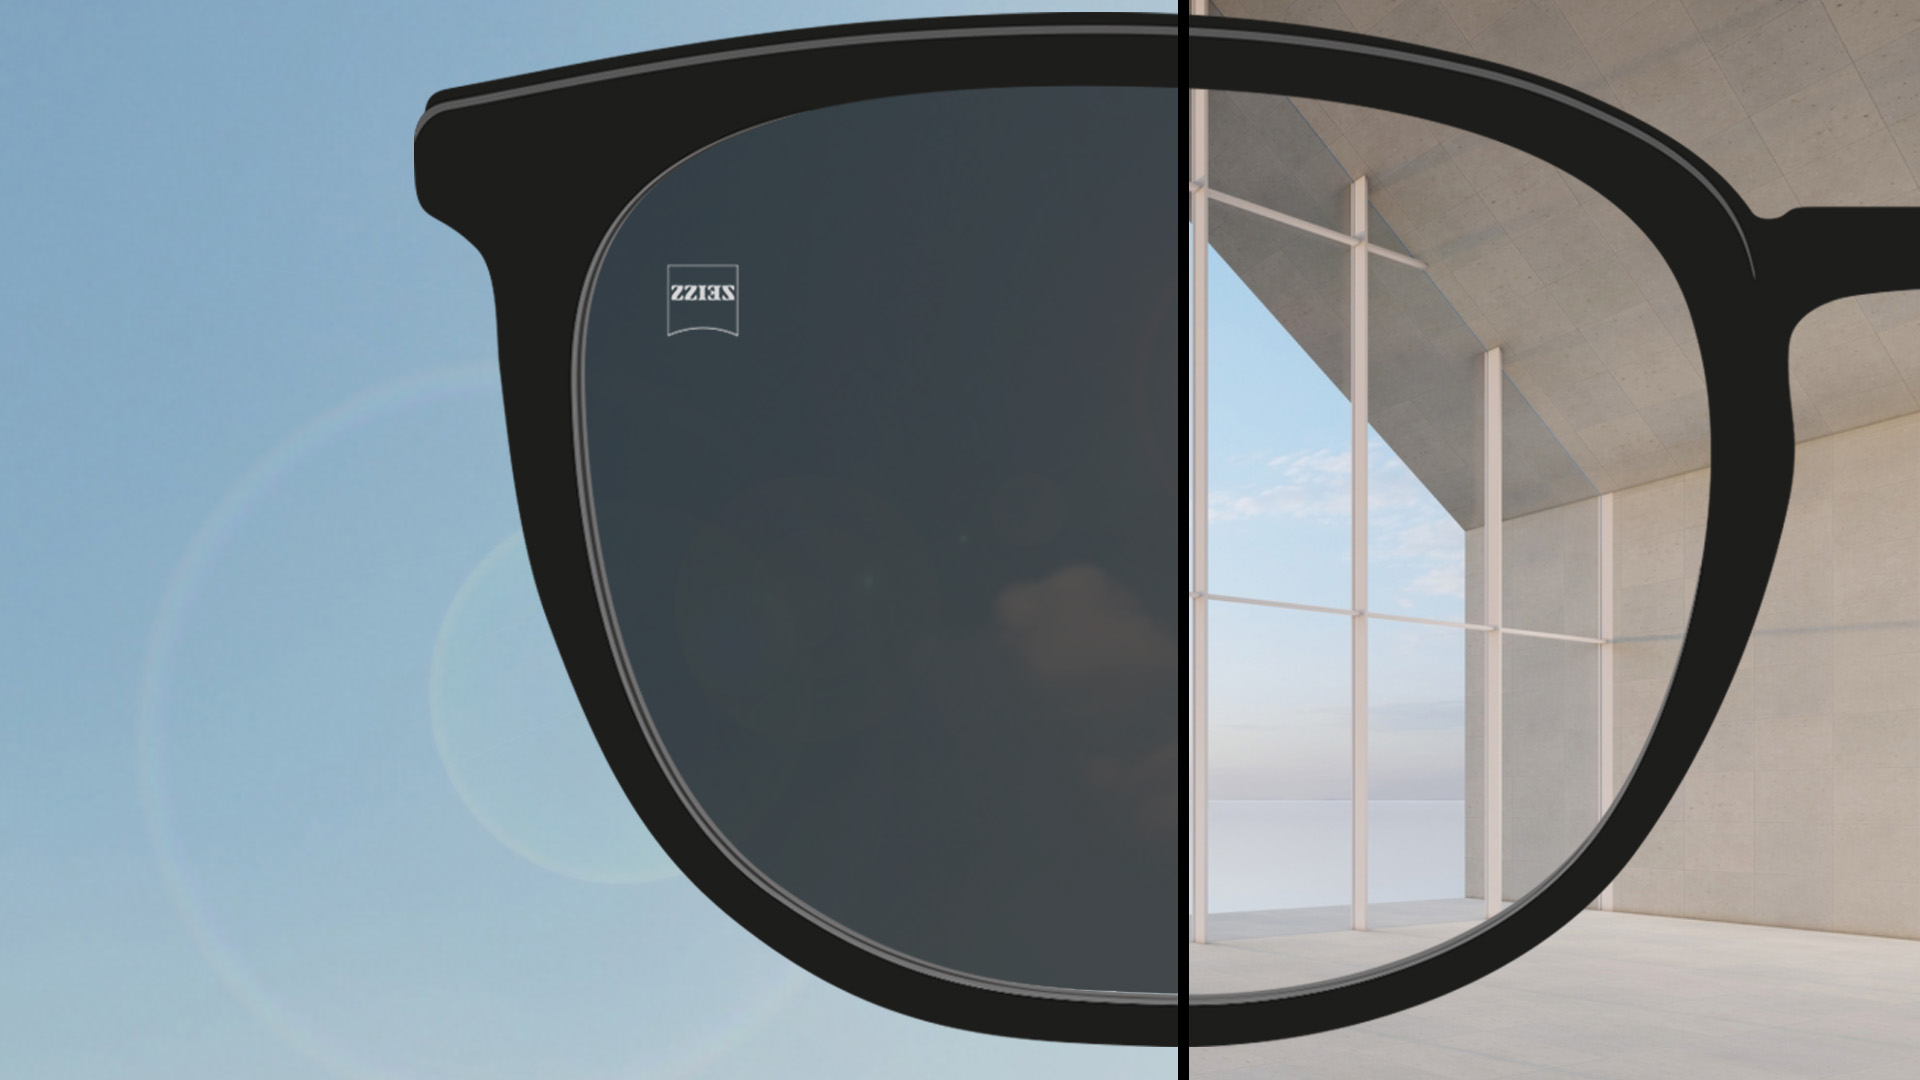 Die Abbildung zeigt ein in zwei Hälften unterteiltes Brillenglas. Eine Hälfte zeigt das klare Brillenglas in Innenräumen, die andere das vollständig eingedunkelte Brillenglas im Freien.